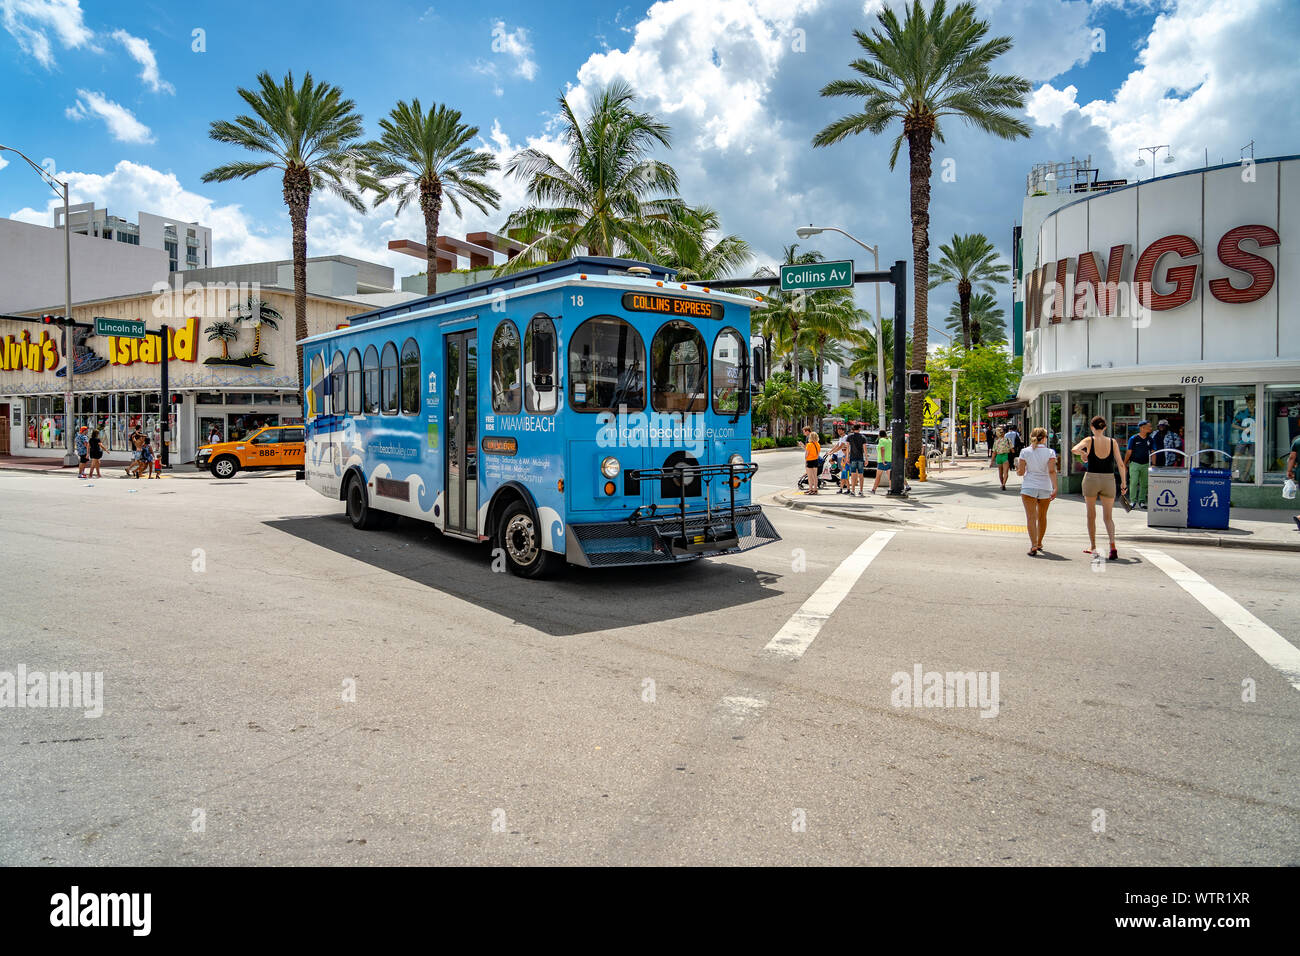 Miami Beach, Floride, Etats-Unis - un trolley de transport de passagers Banque D'Images